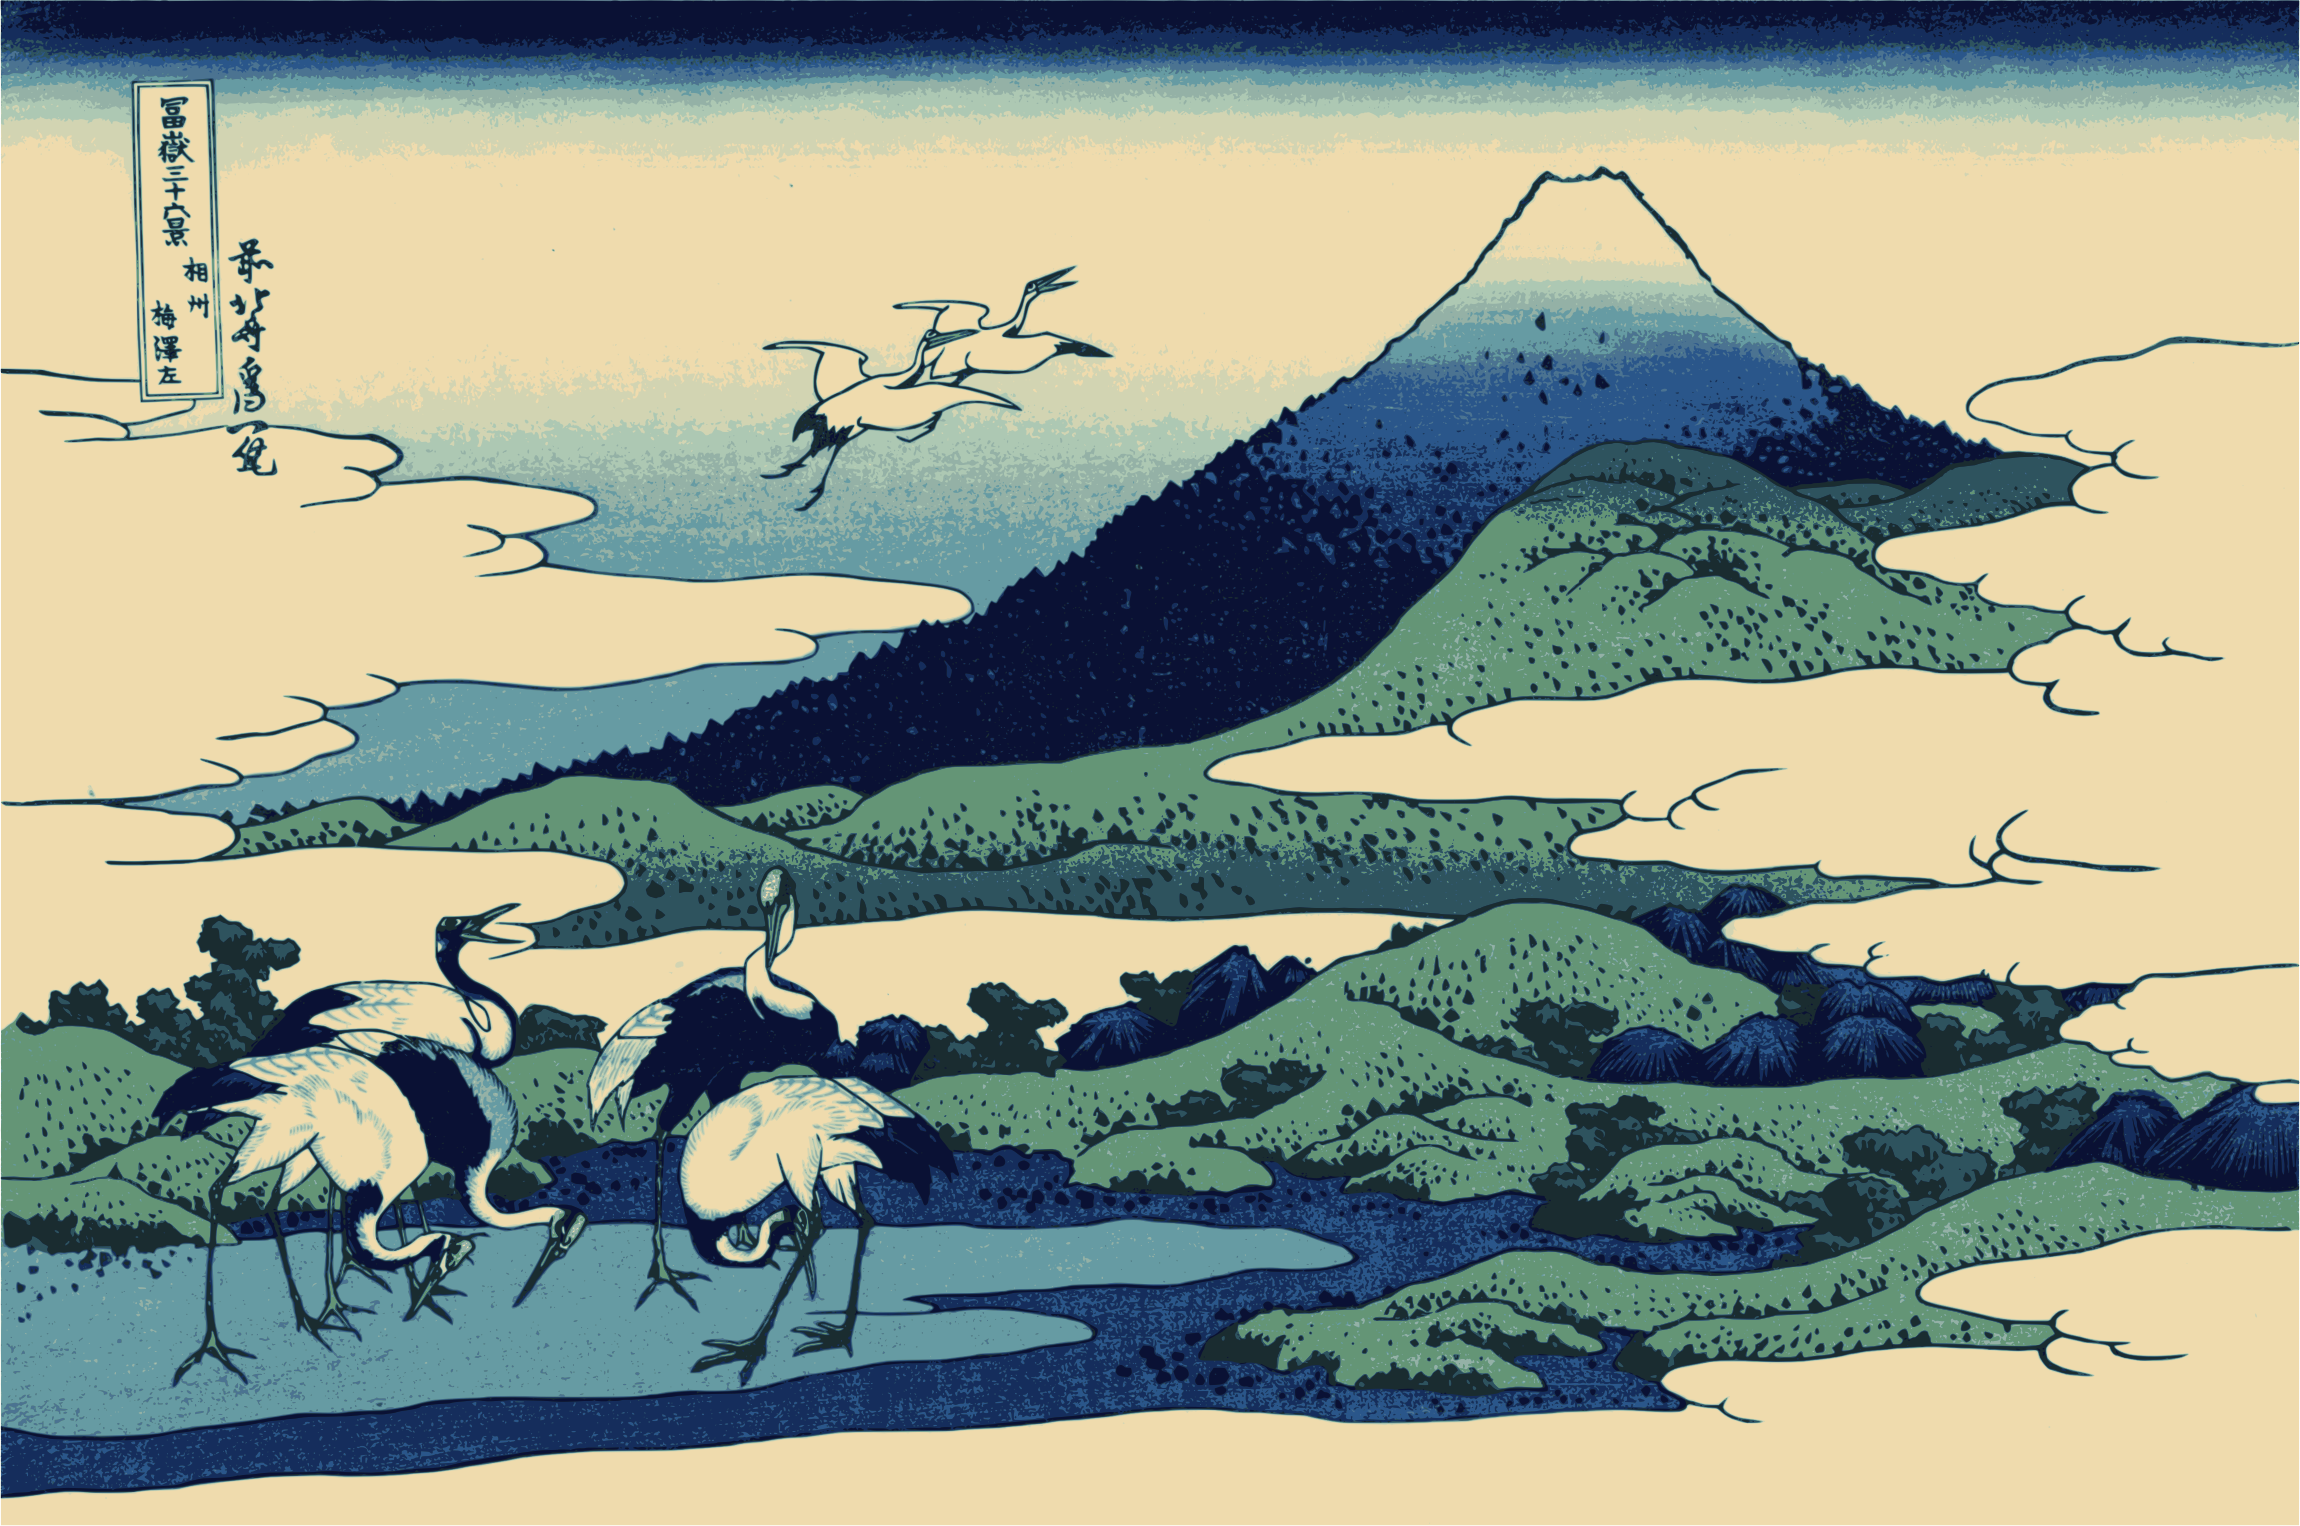 General 2300x1526 Hokusai Mount Fuji Japan Ukiyo-e classic art